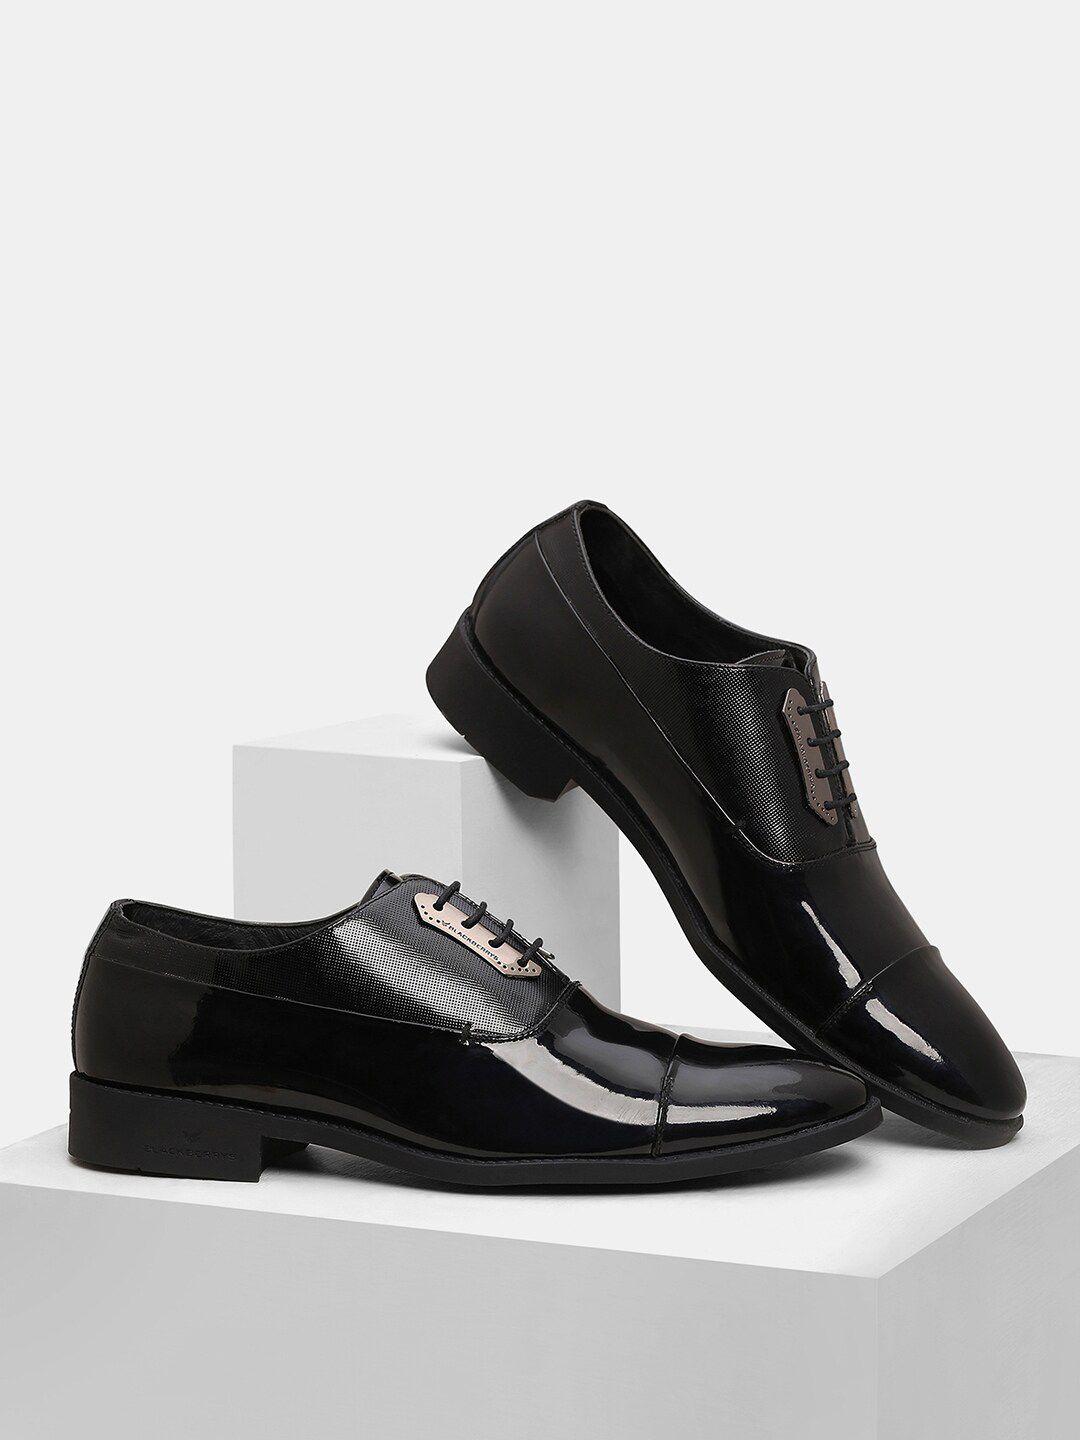 blackberrys-men-black-solid-leather-oxfords-formal-shoes